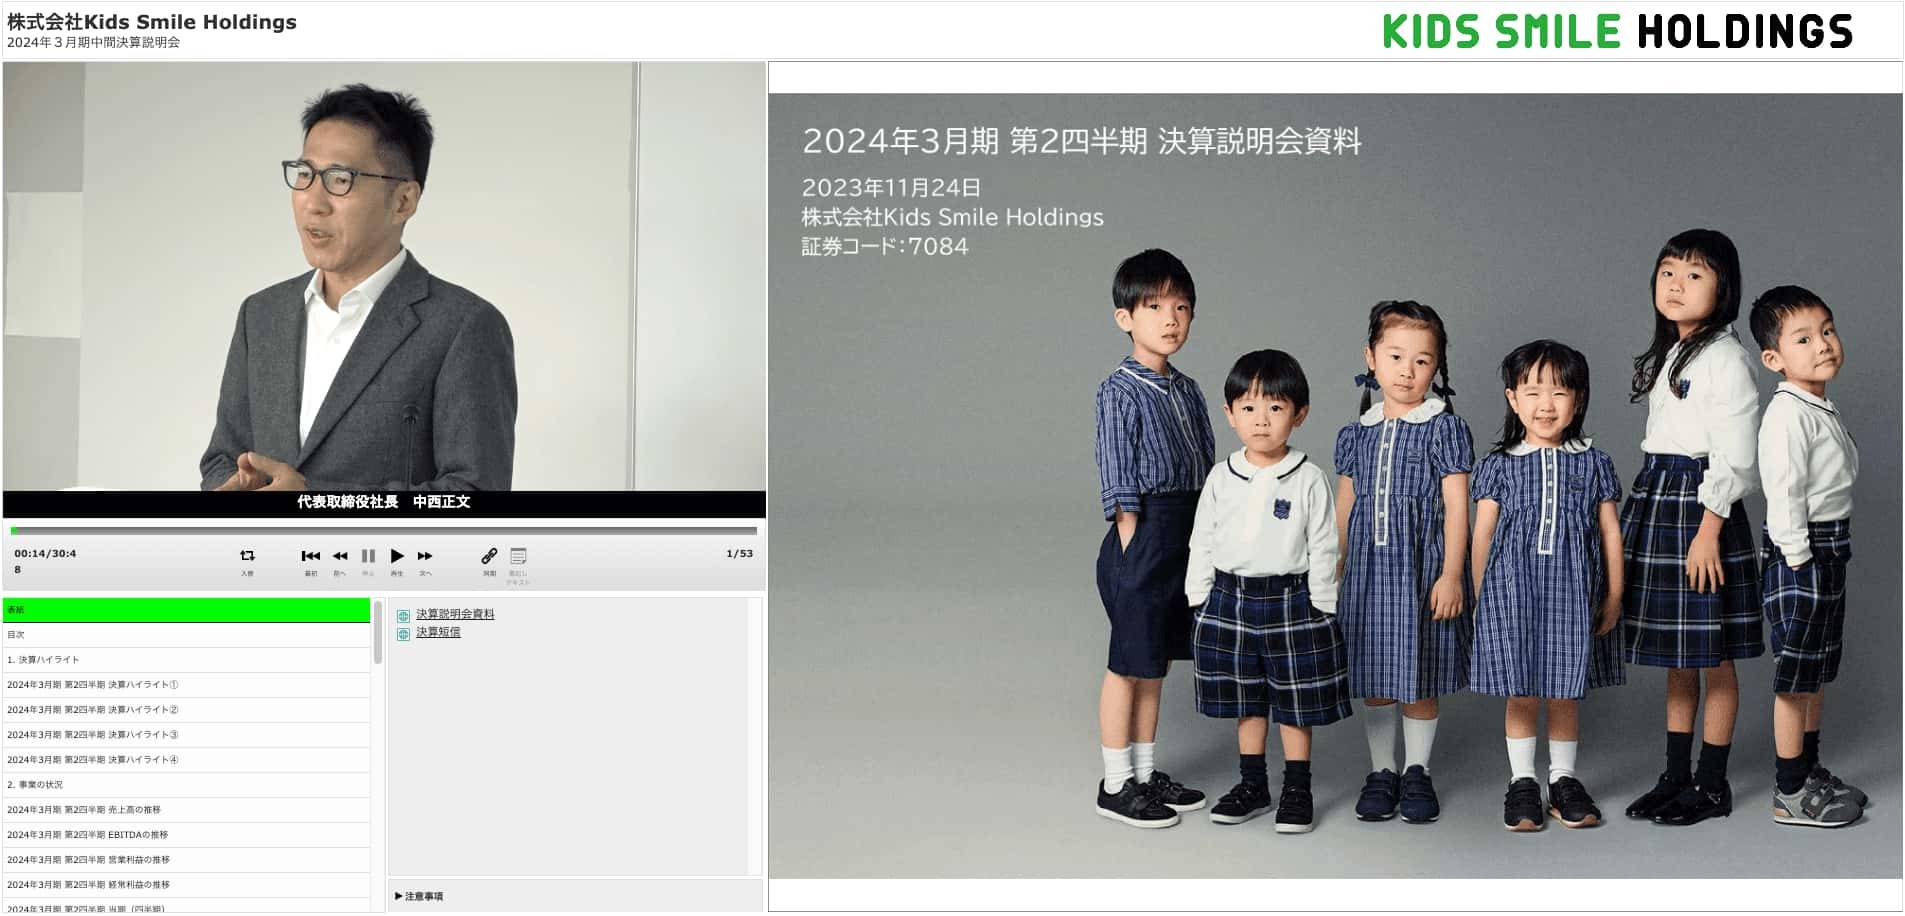 株式会社Kids Smile Holdings 2024年3月期 第2四半期決算説明会動画 表紙